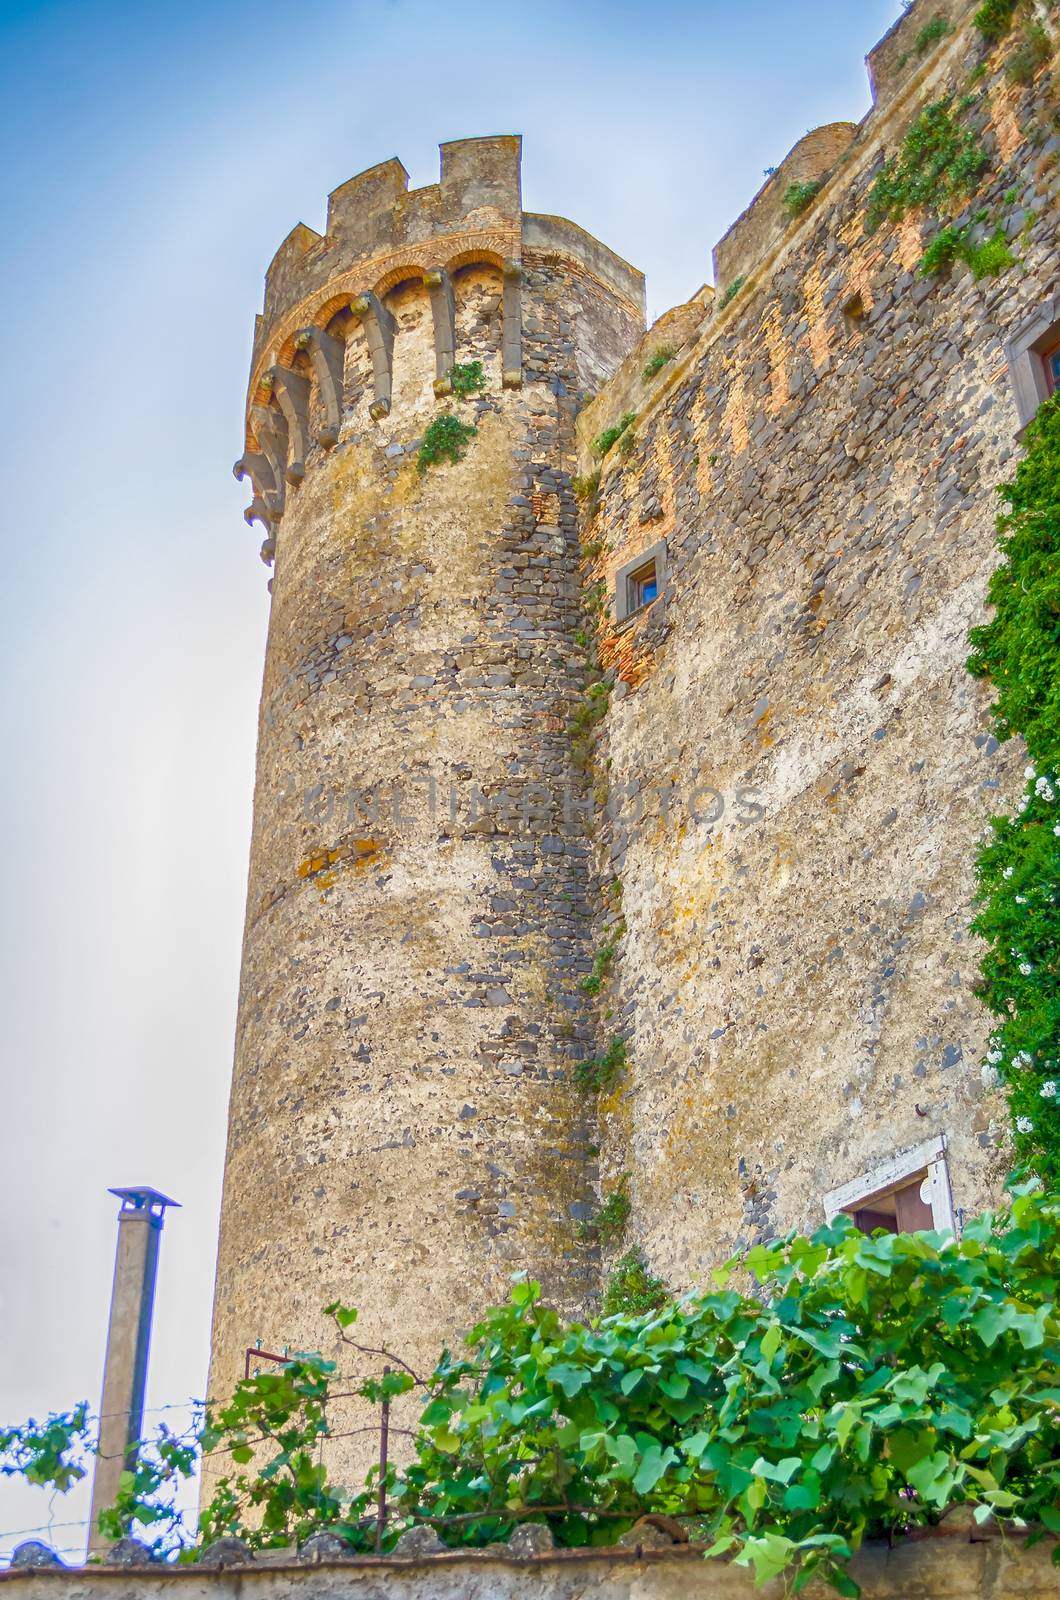 Bastion of The Odescalchi Castle in Bracciano, Italy